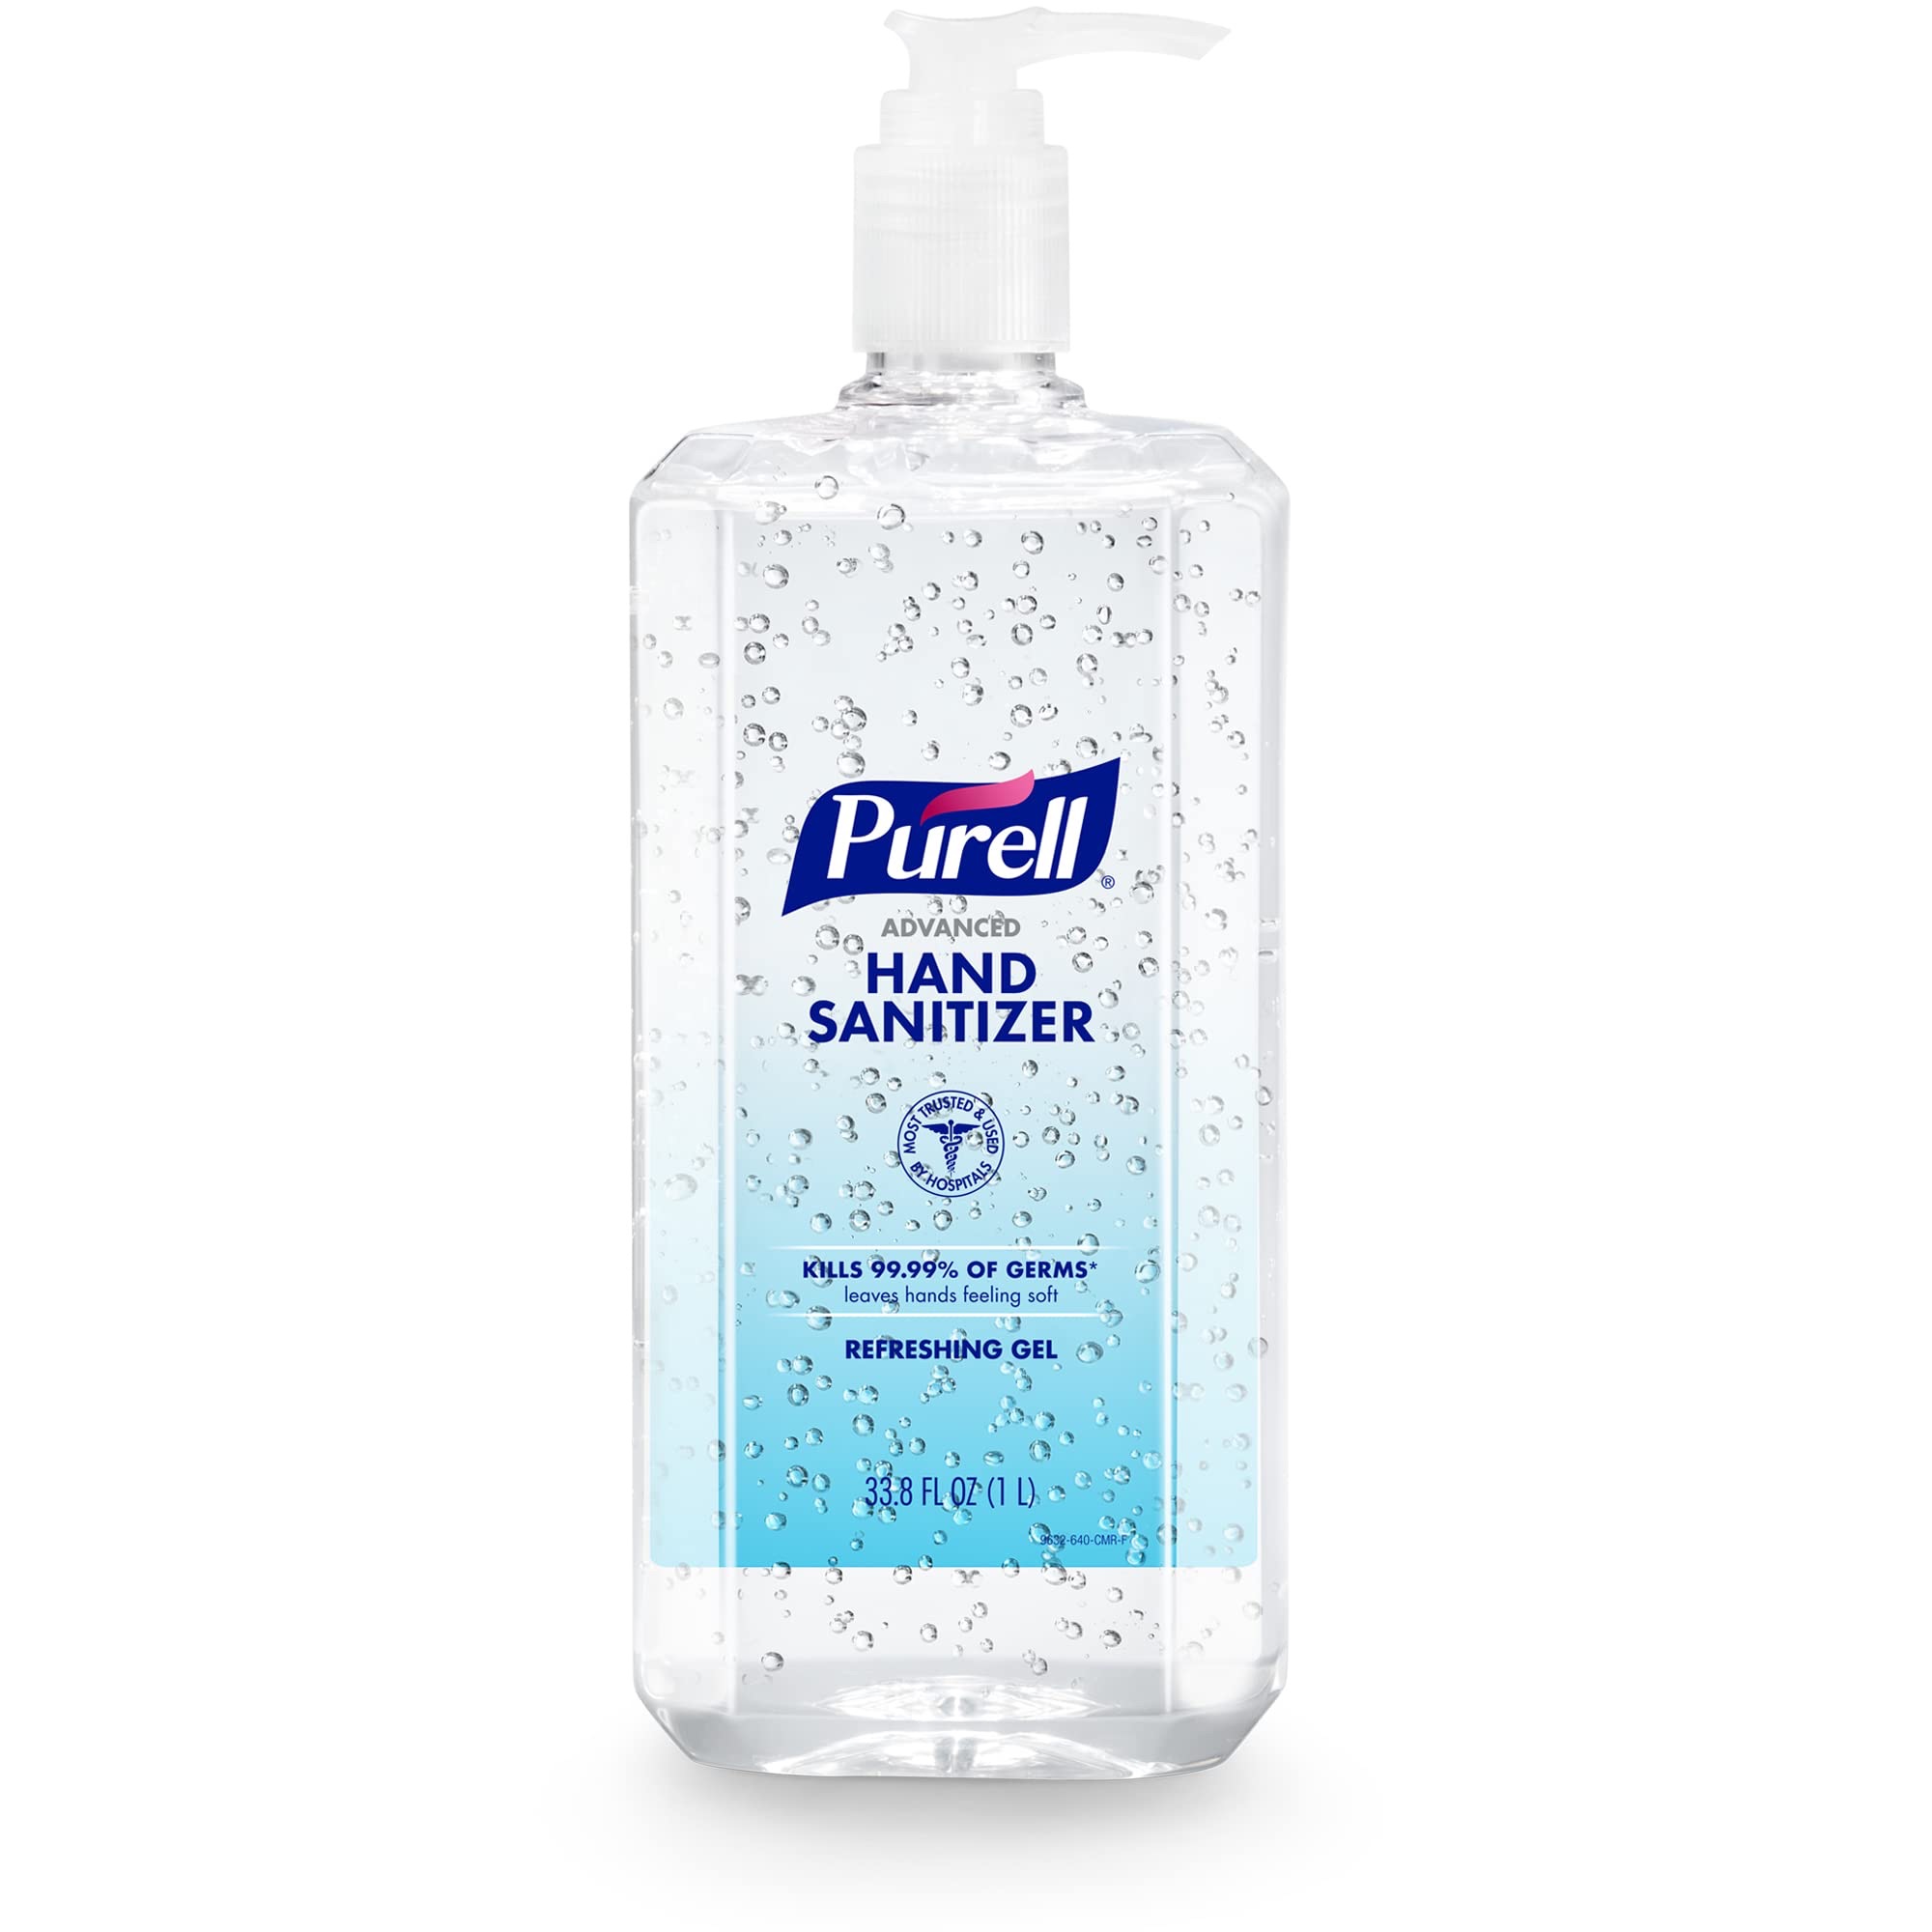 免洗洗手液 Amazon.com: Purell Advanced Hand Sanitizer Refreshing Gel, Clean Scent, 1 Liter Pump Bottle (Pack of 1) – 9632-04-CMR : Health & Household